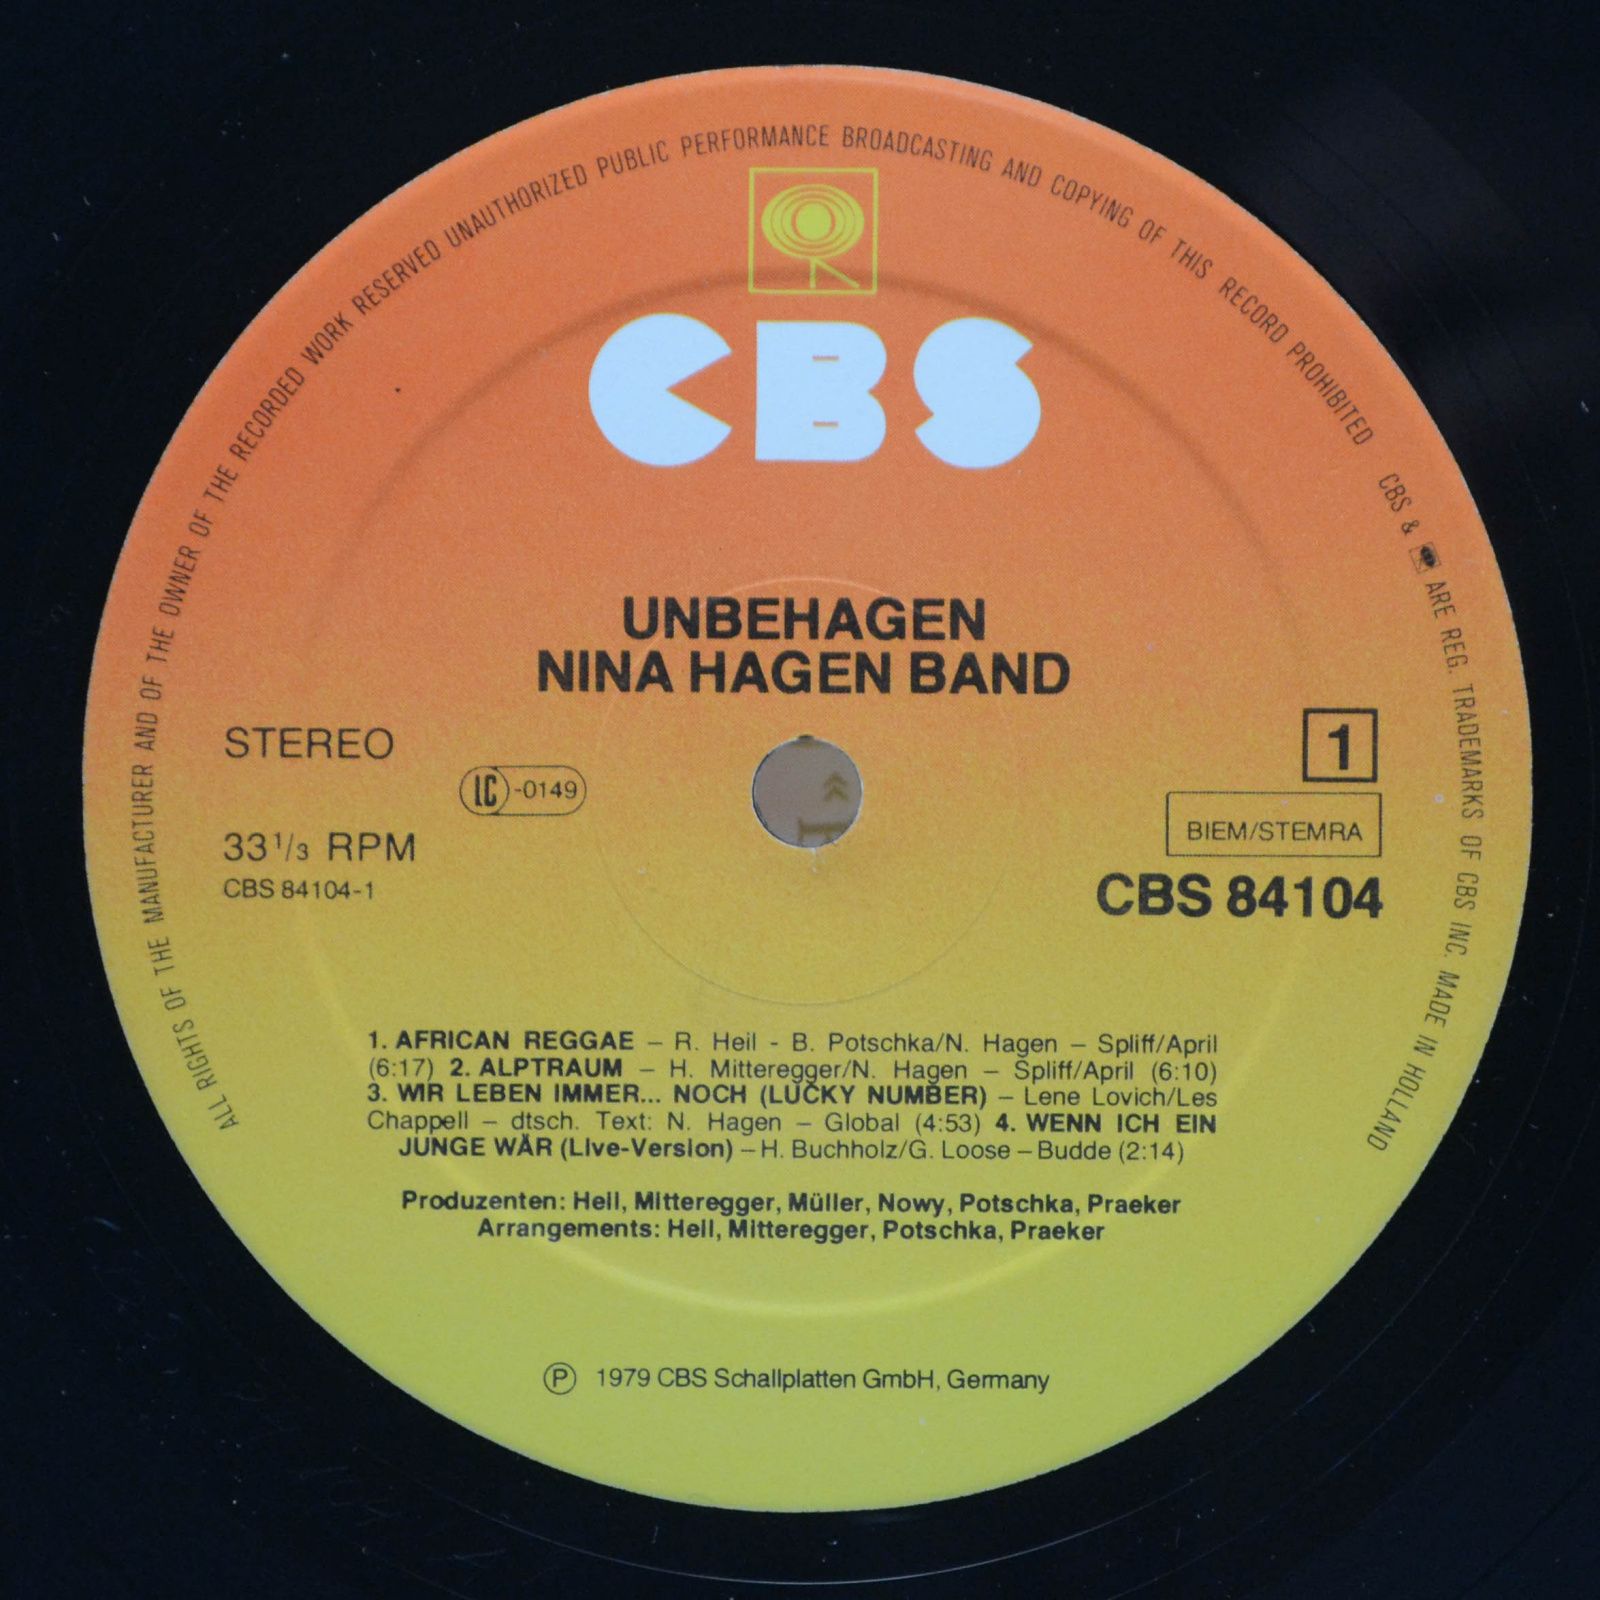 Nina Hagen Band — Unbehagen, 1979